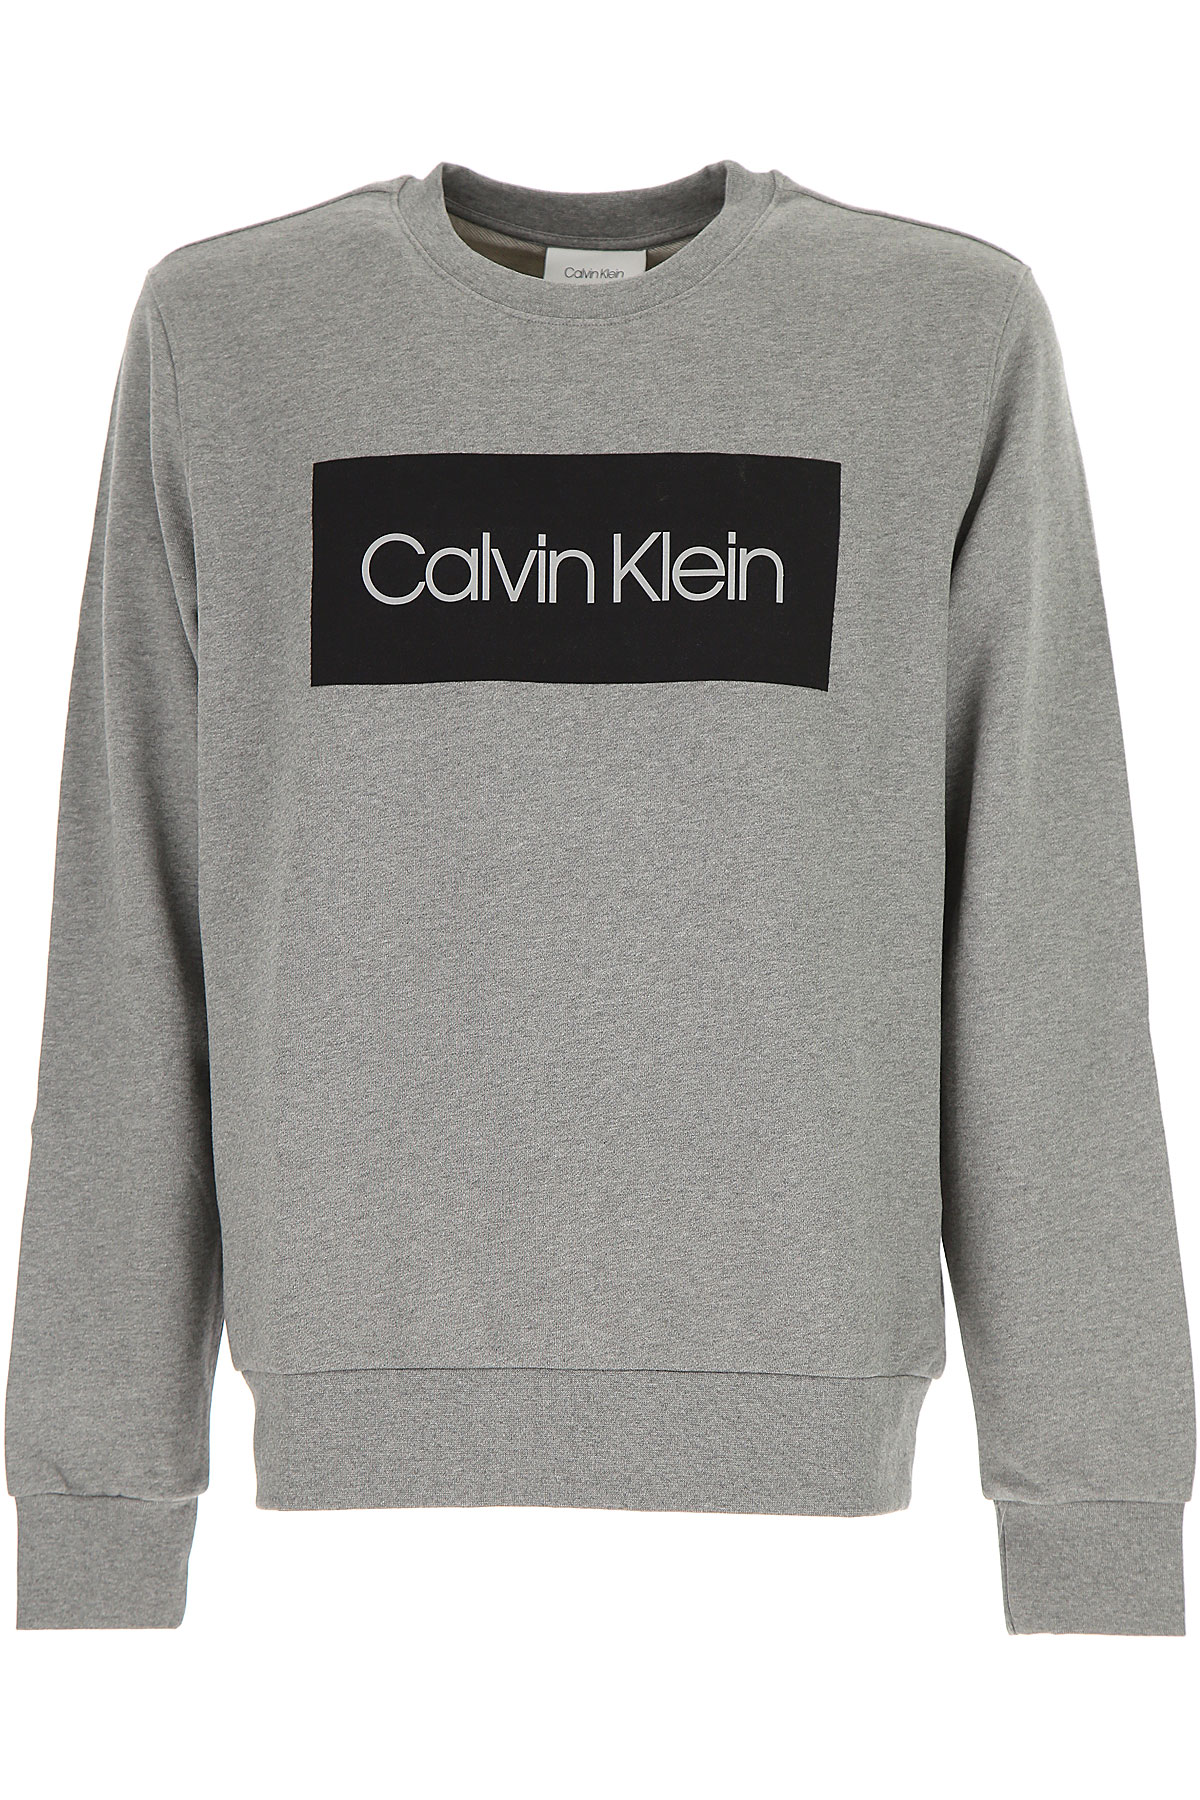 Calvin Klein Sweatshirt für Herren, Kapuzenpulli, Hoodie, Sweats Günstig im Outlet Sale, Grau, Baumwolle, 2017, L M XL